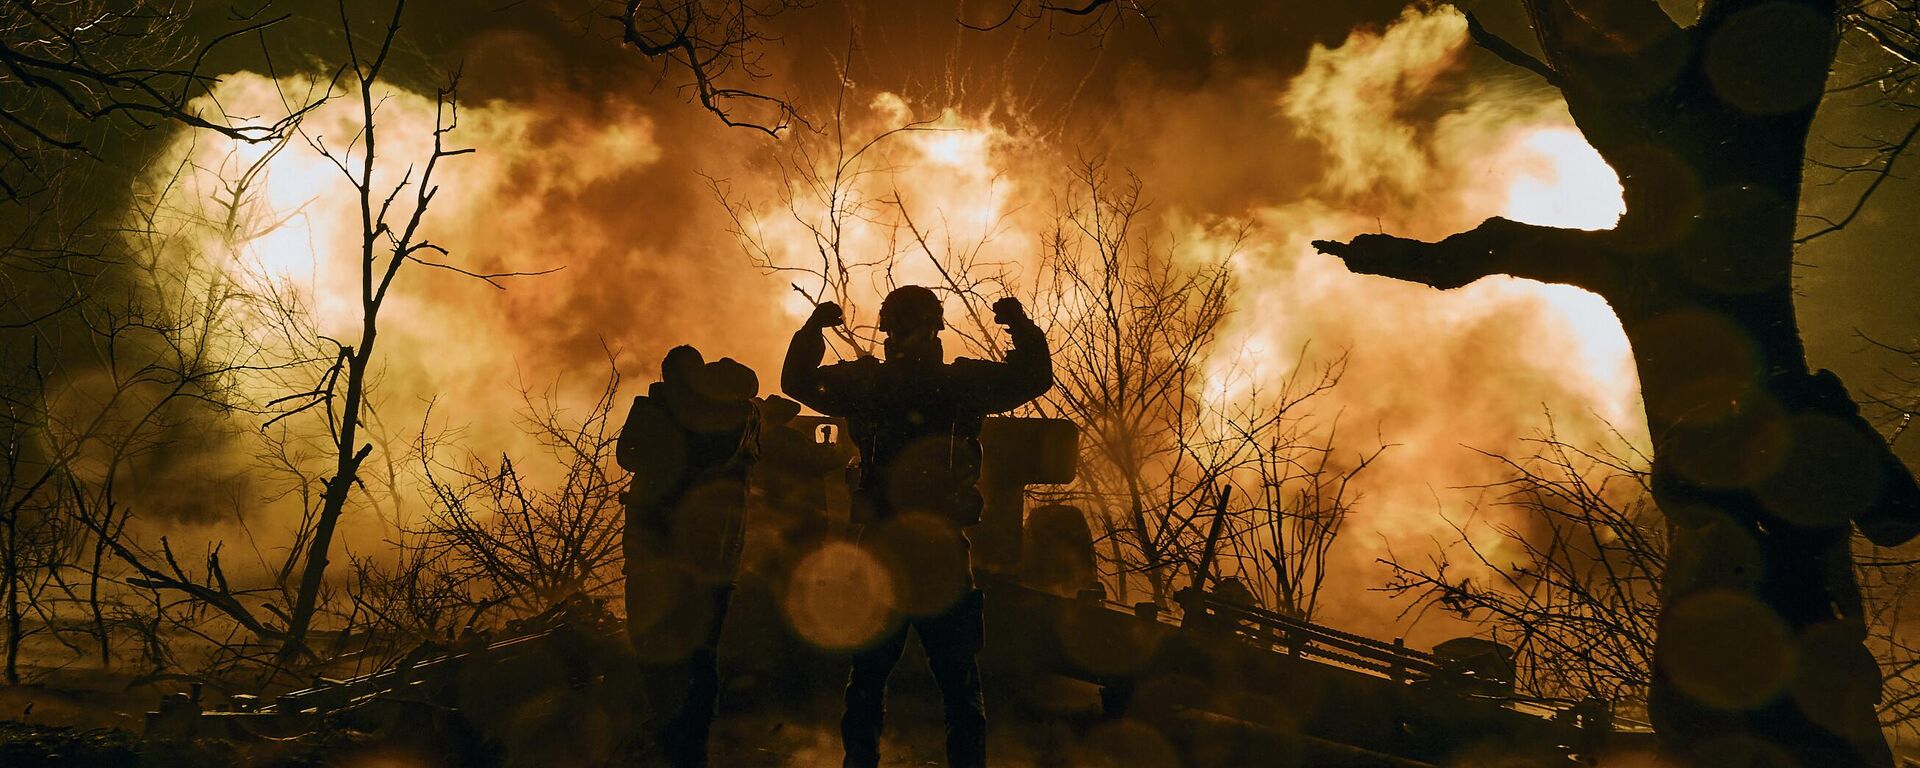  جنود أوكرانيون يطلقون نيران المدفعية على مواقع روسية بالقرب من باخموت في منطقة دونيتسك، 20 نوفمبر 2022.  - سبوتنيك عربي, 1920, 26.03.2023